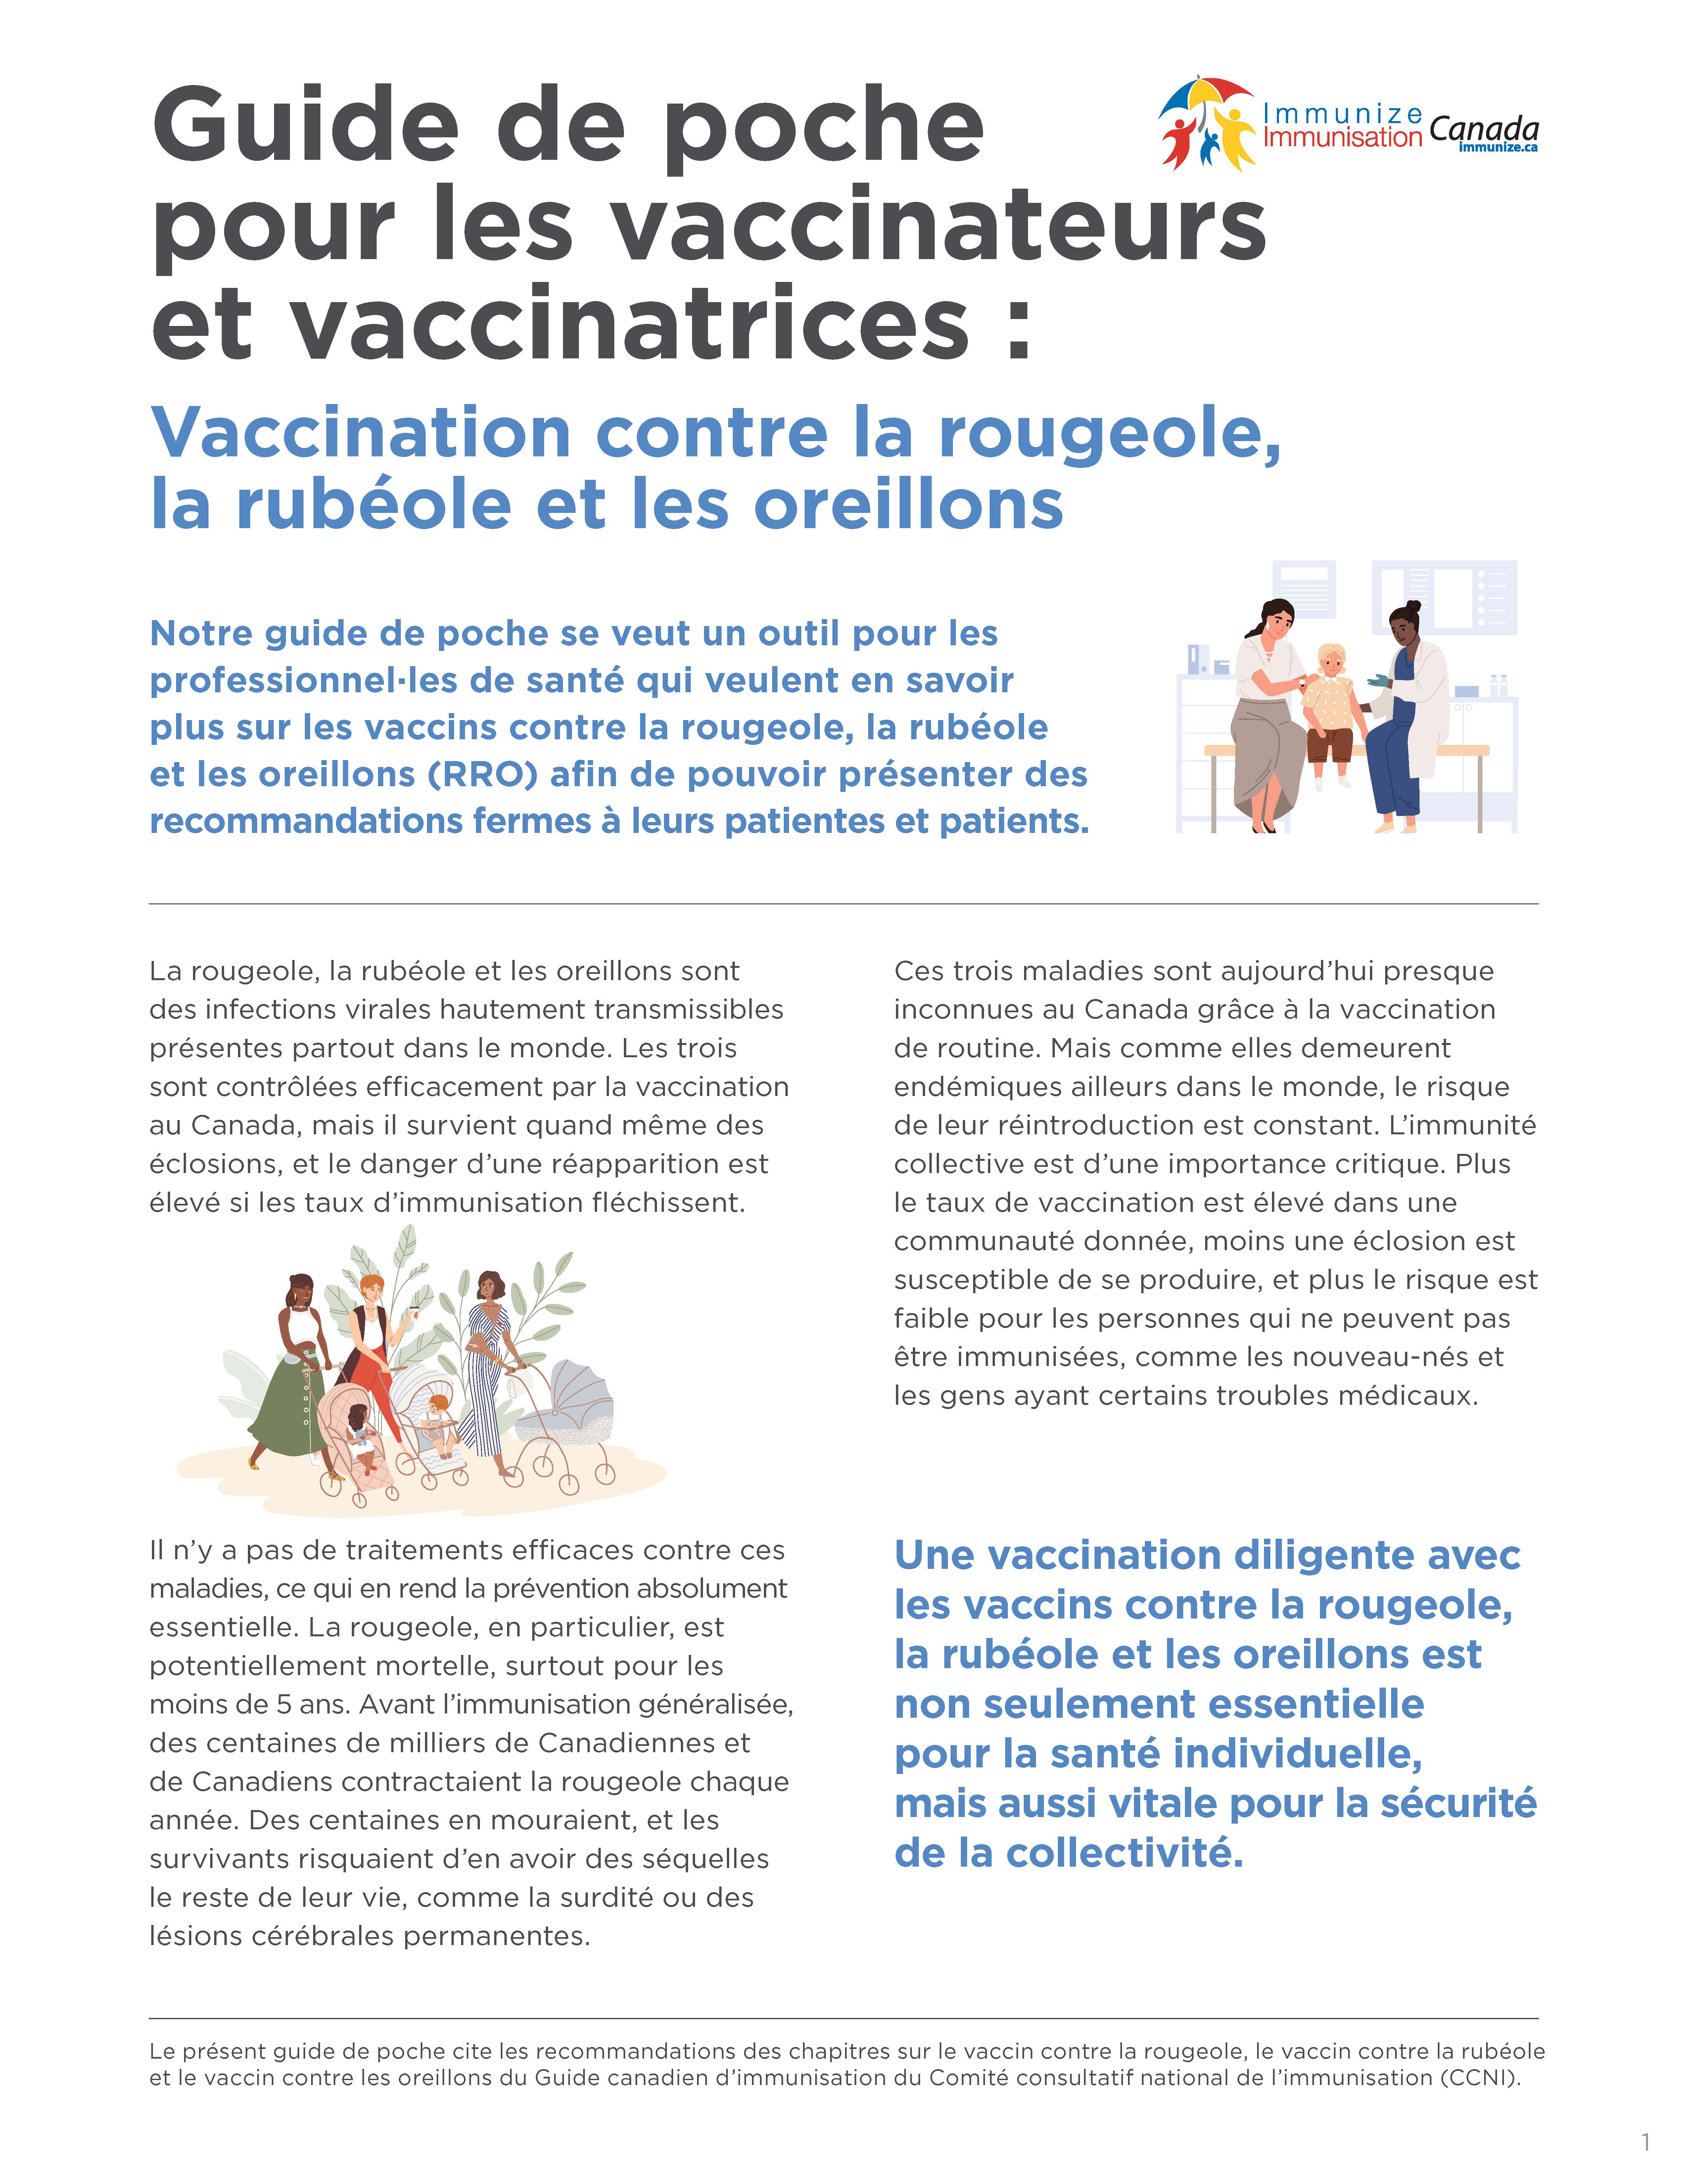 Guide de poche pour les vaccinateurs et vaccinatrices : Vaccination contre la rougeole, la rubéole et les oreillons